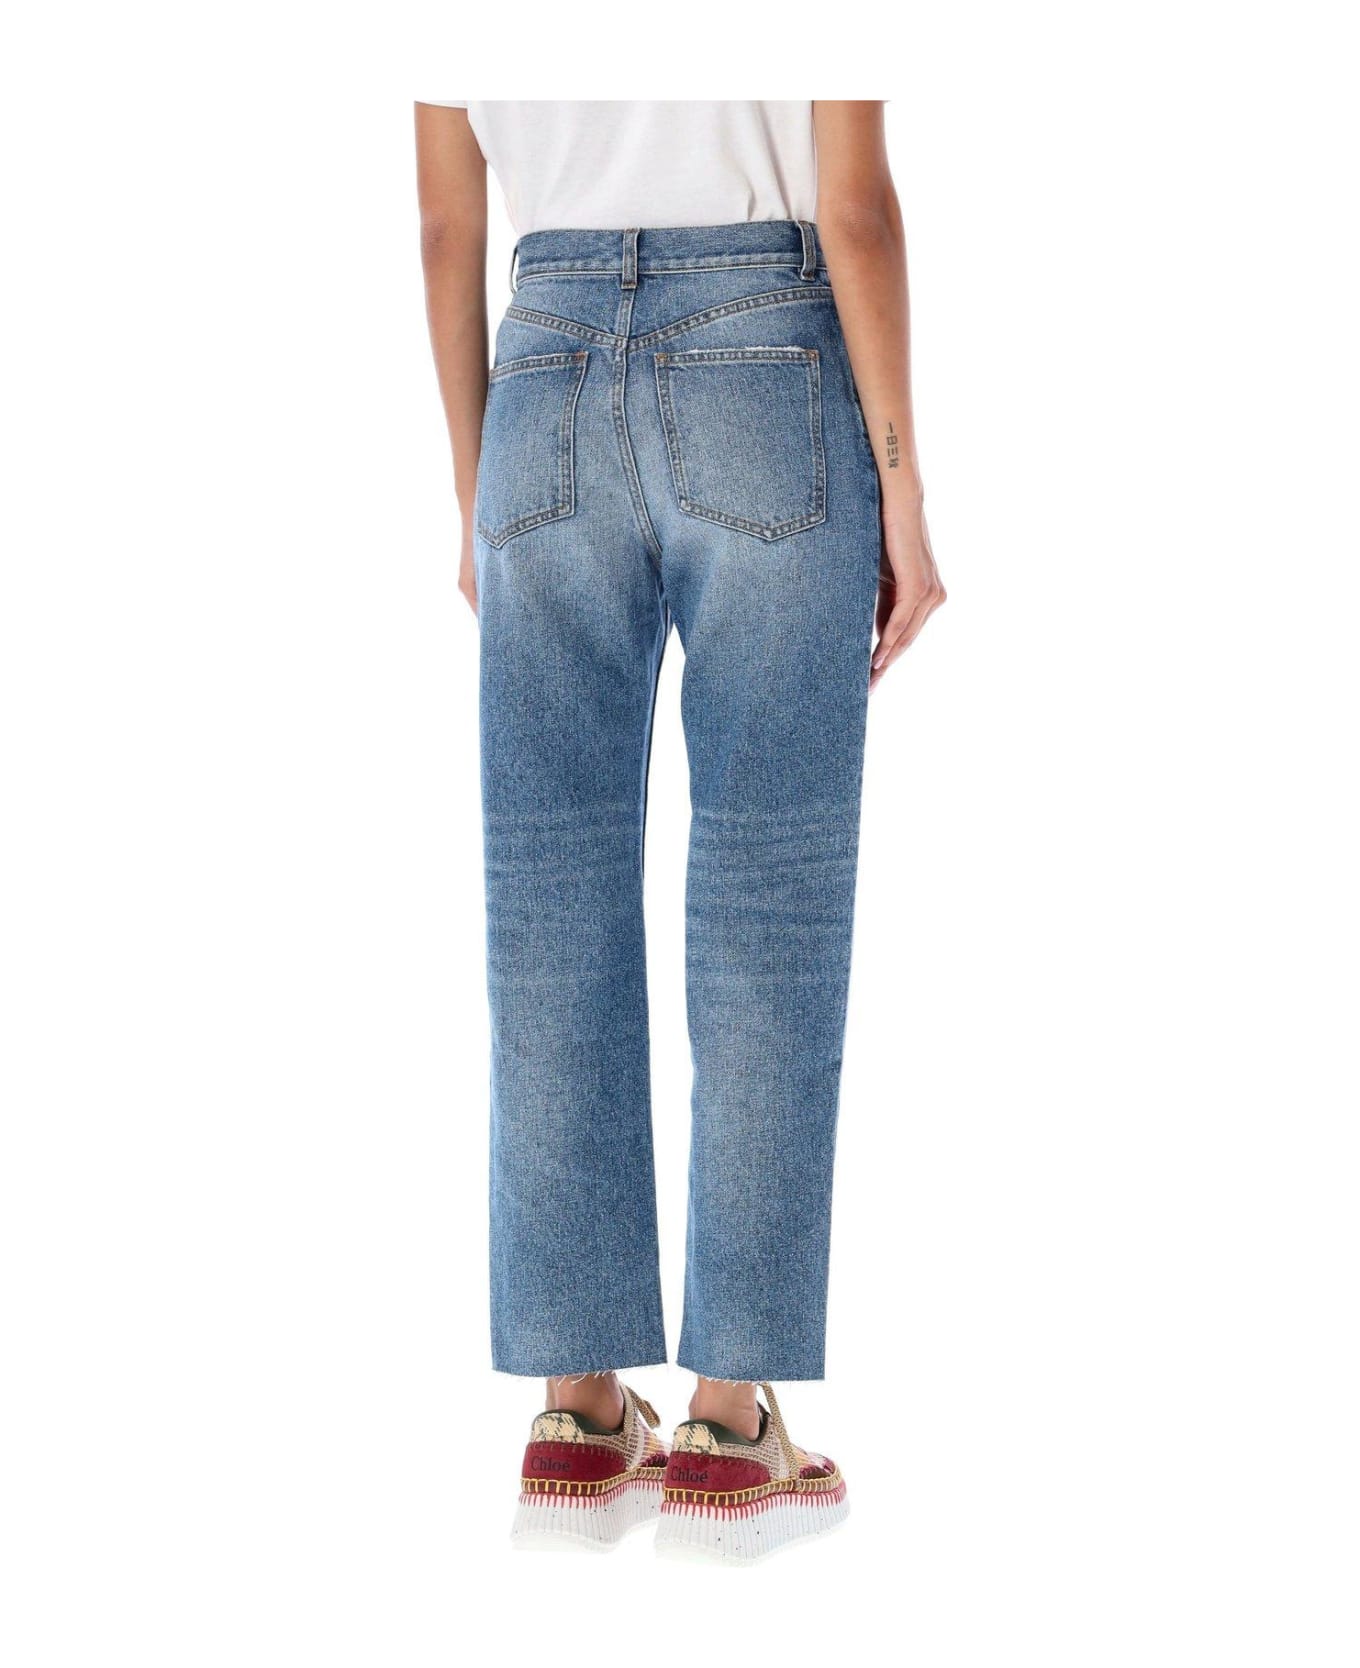 Chloé Raw Cut Denim Jeans - FOGGY BLUE デニム